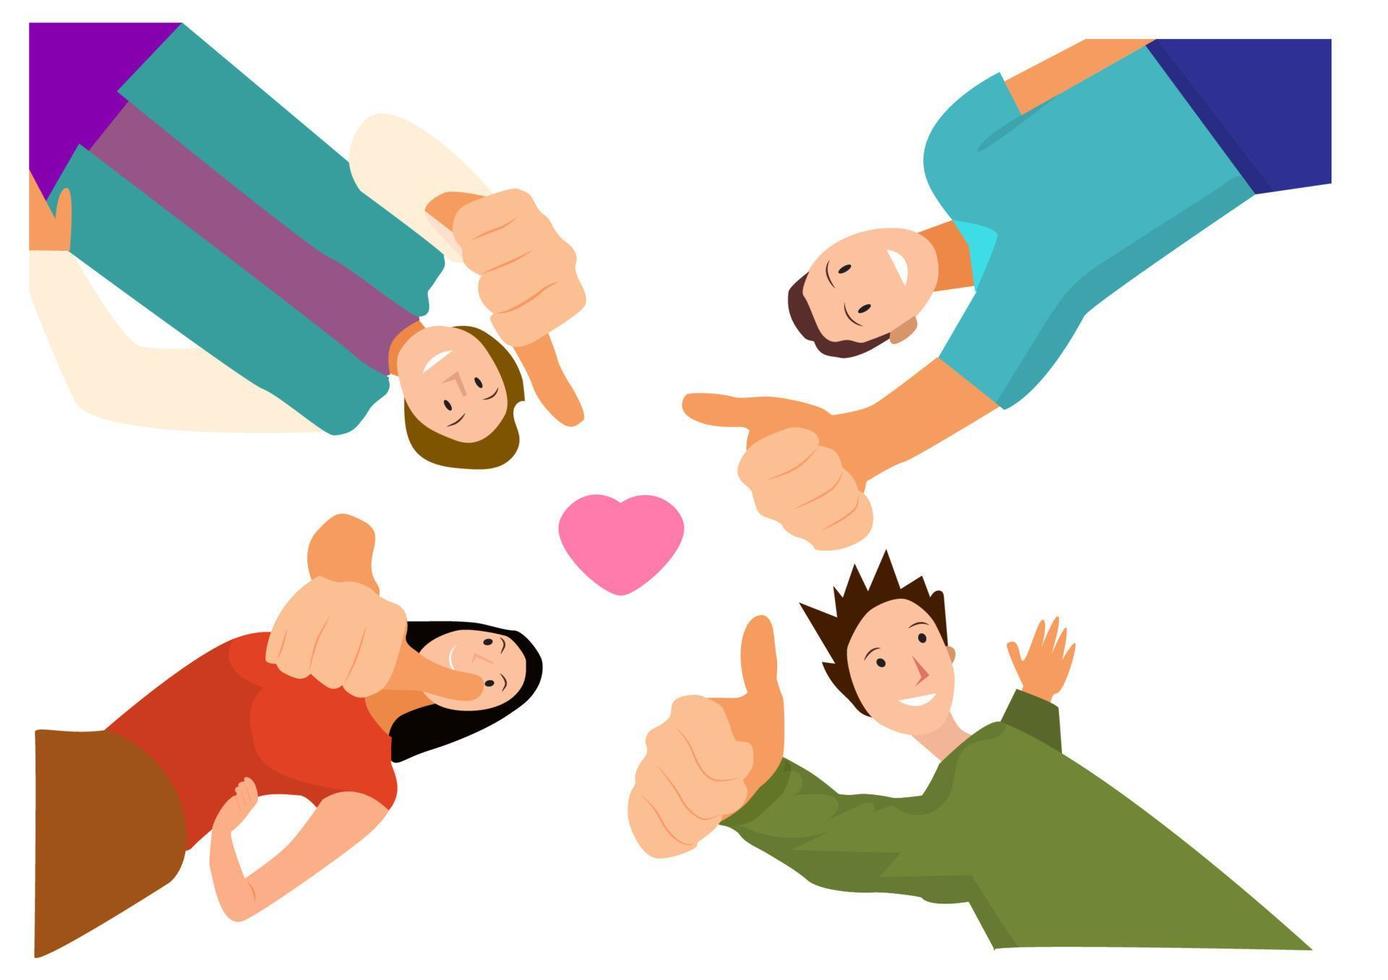 Jungen und Mädchen teilen die Kraft des Daumens in ihrer Freundschaft. Cartoon-Illustrationsvektor im flachen Stil vektor